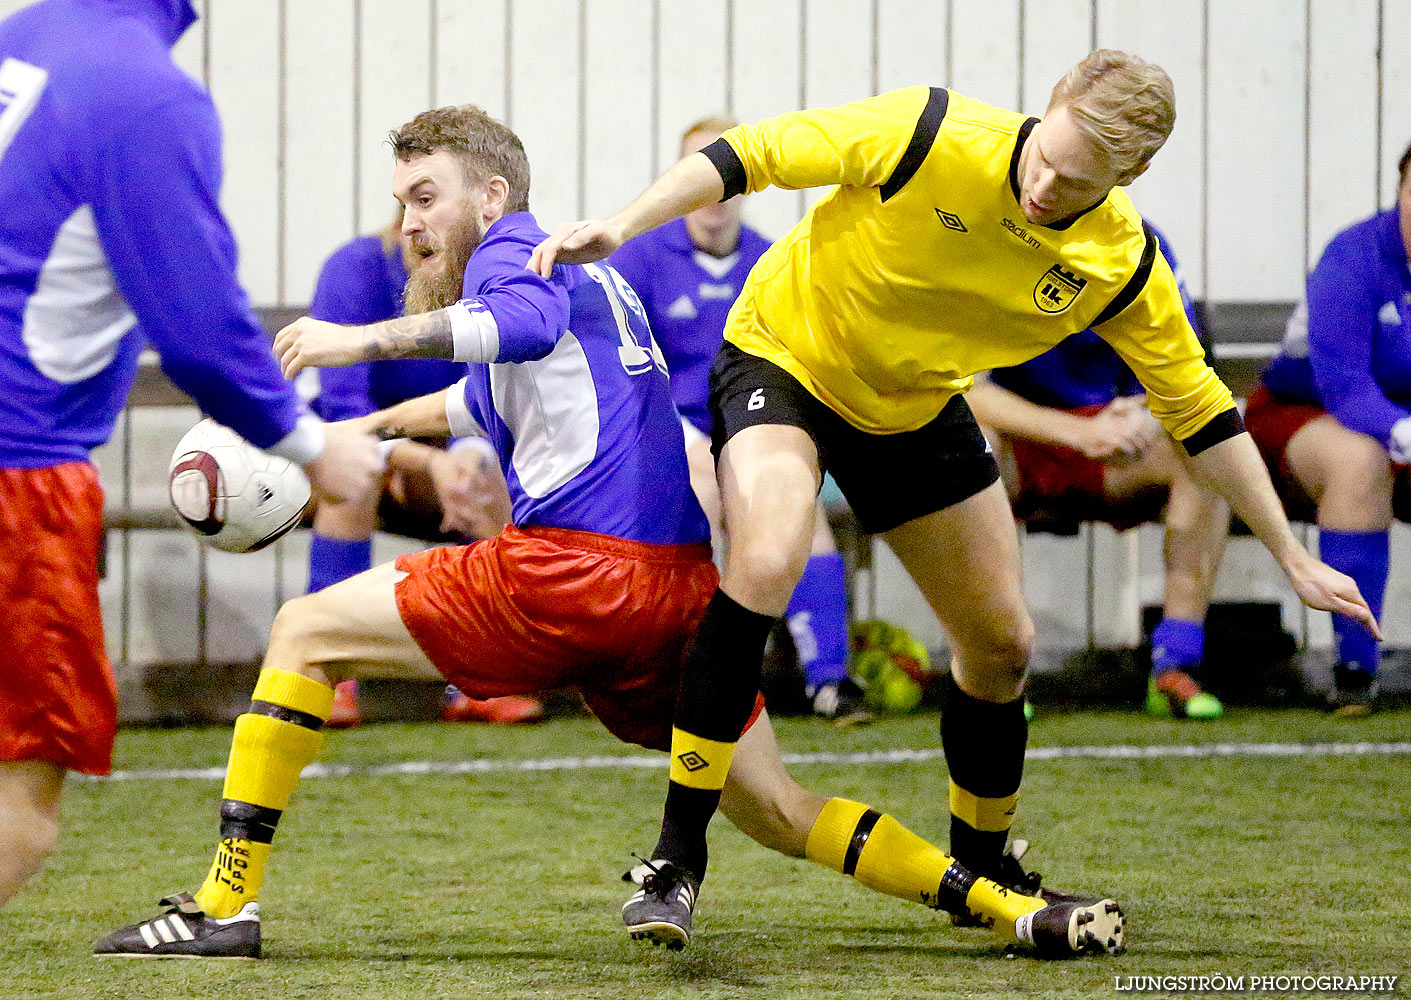 Skövde Soccer Championship,mix,Ulvahallen,Ulvåker,Sverige,Fotboll,,2015,126651